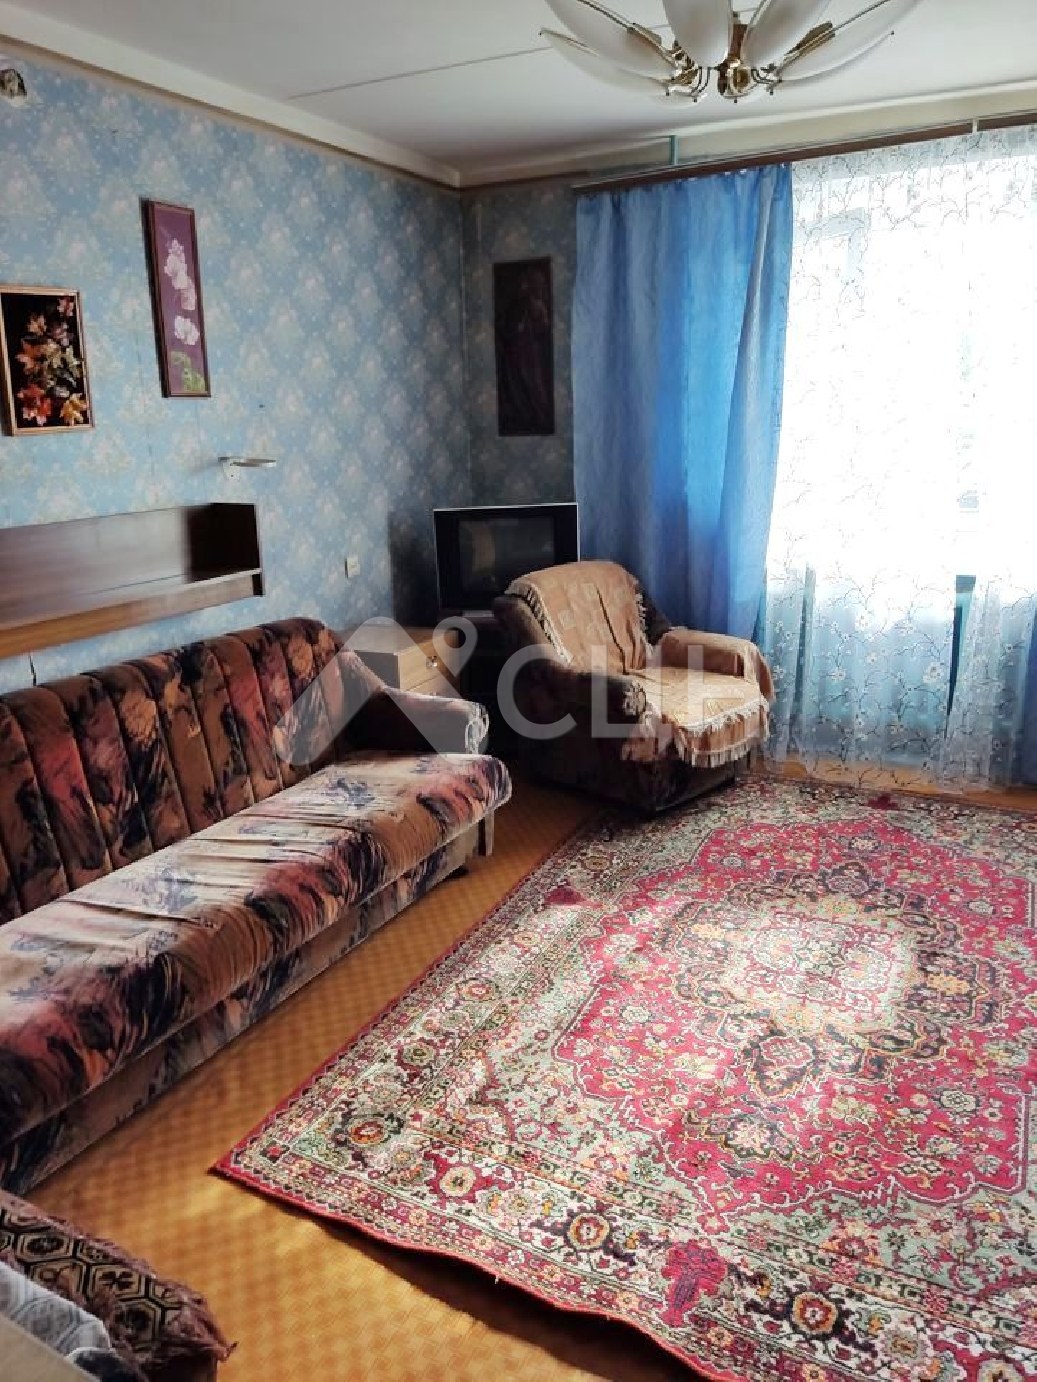 авито саров квартиры
: Г. Саров, улица Некрасова, 11, 3-комн квартира, этаж 2 из 9, продажа.